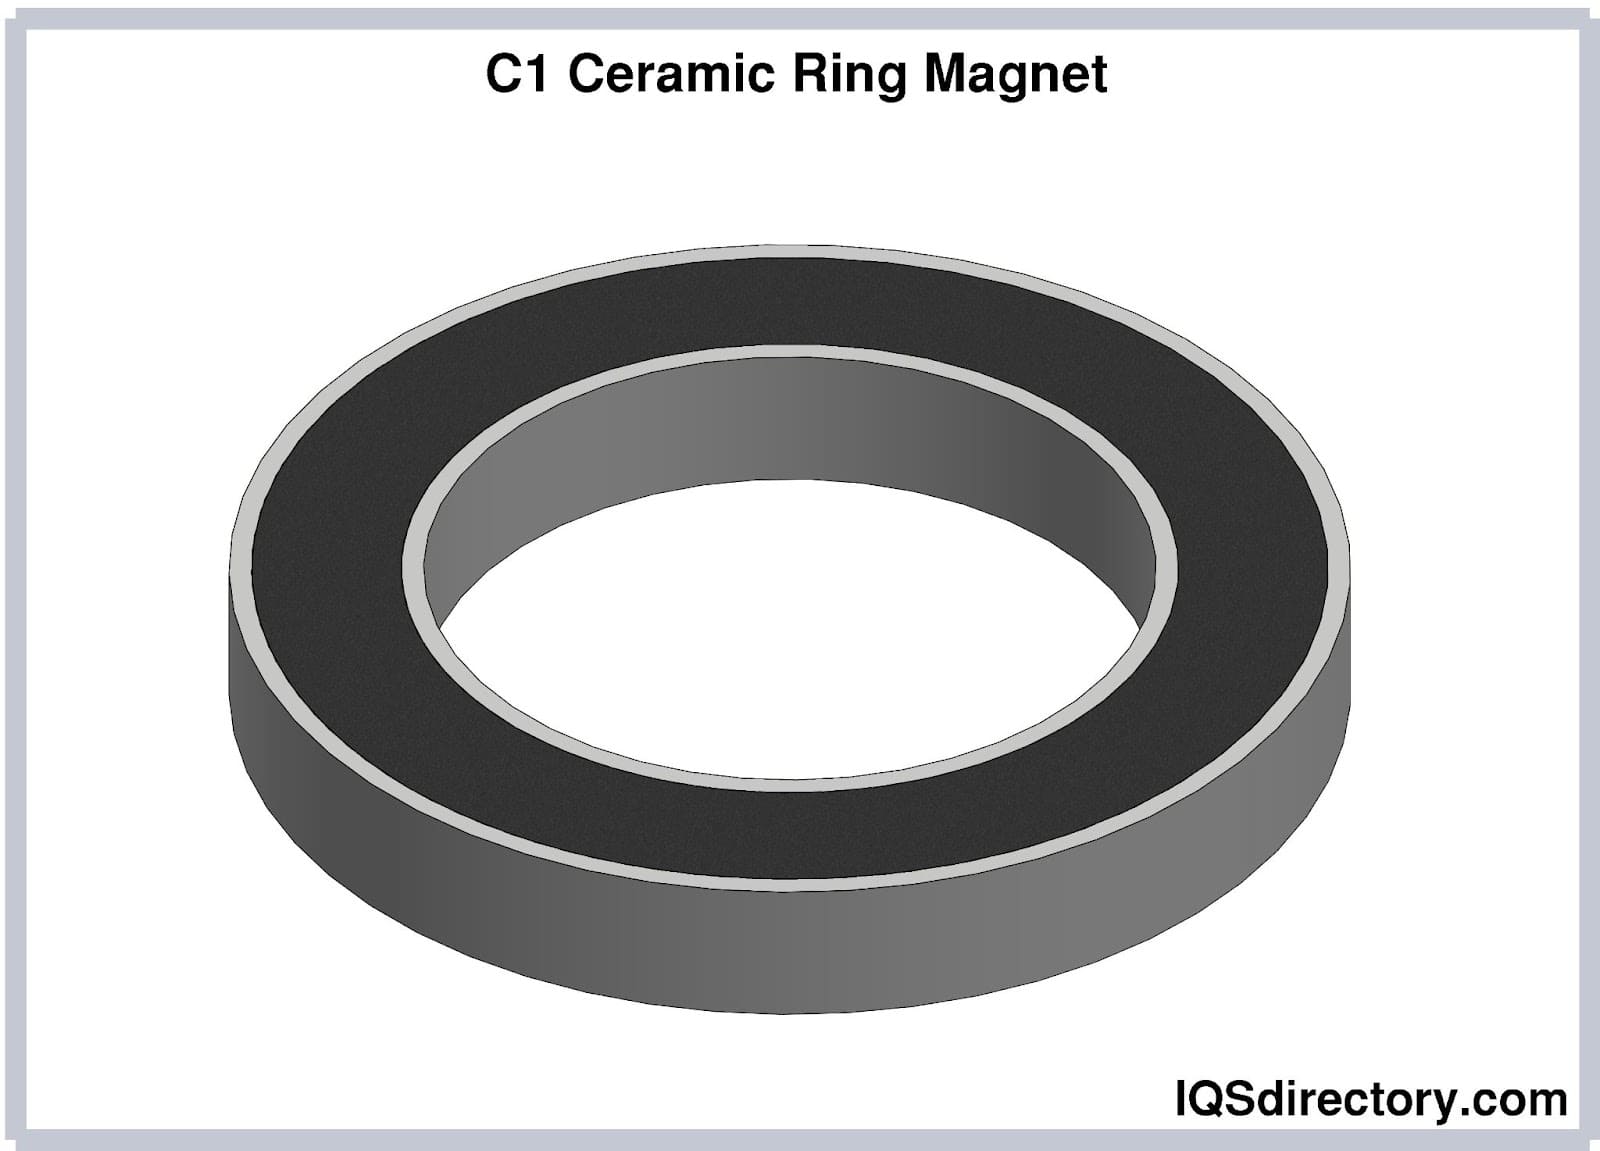 70 x 32 x 15mm Ferrite Ring Magnets - Pack of 3/5/10 - Magneticks